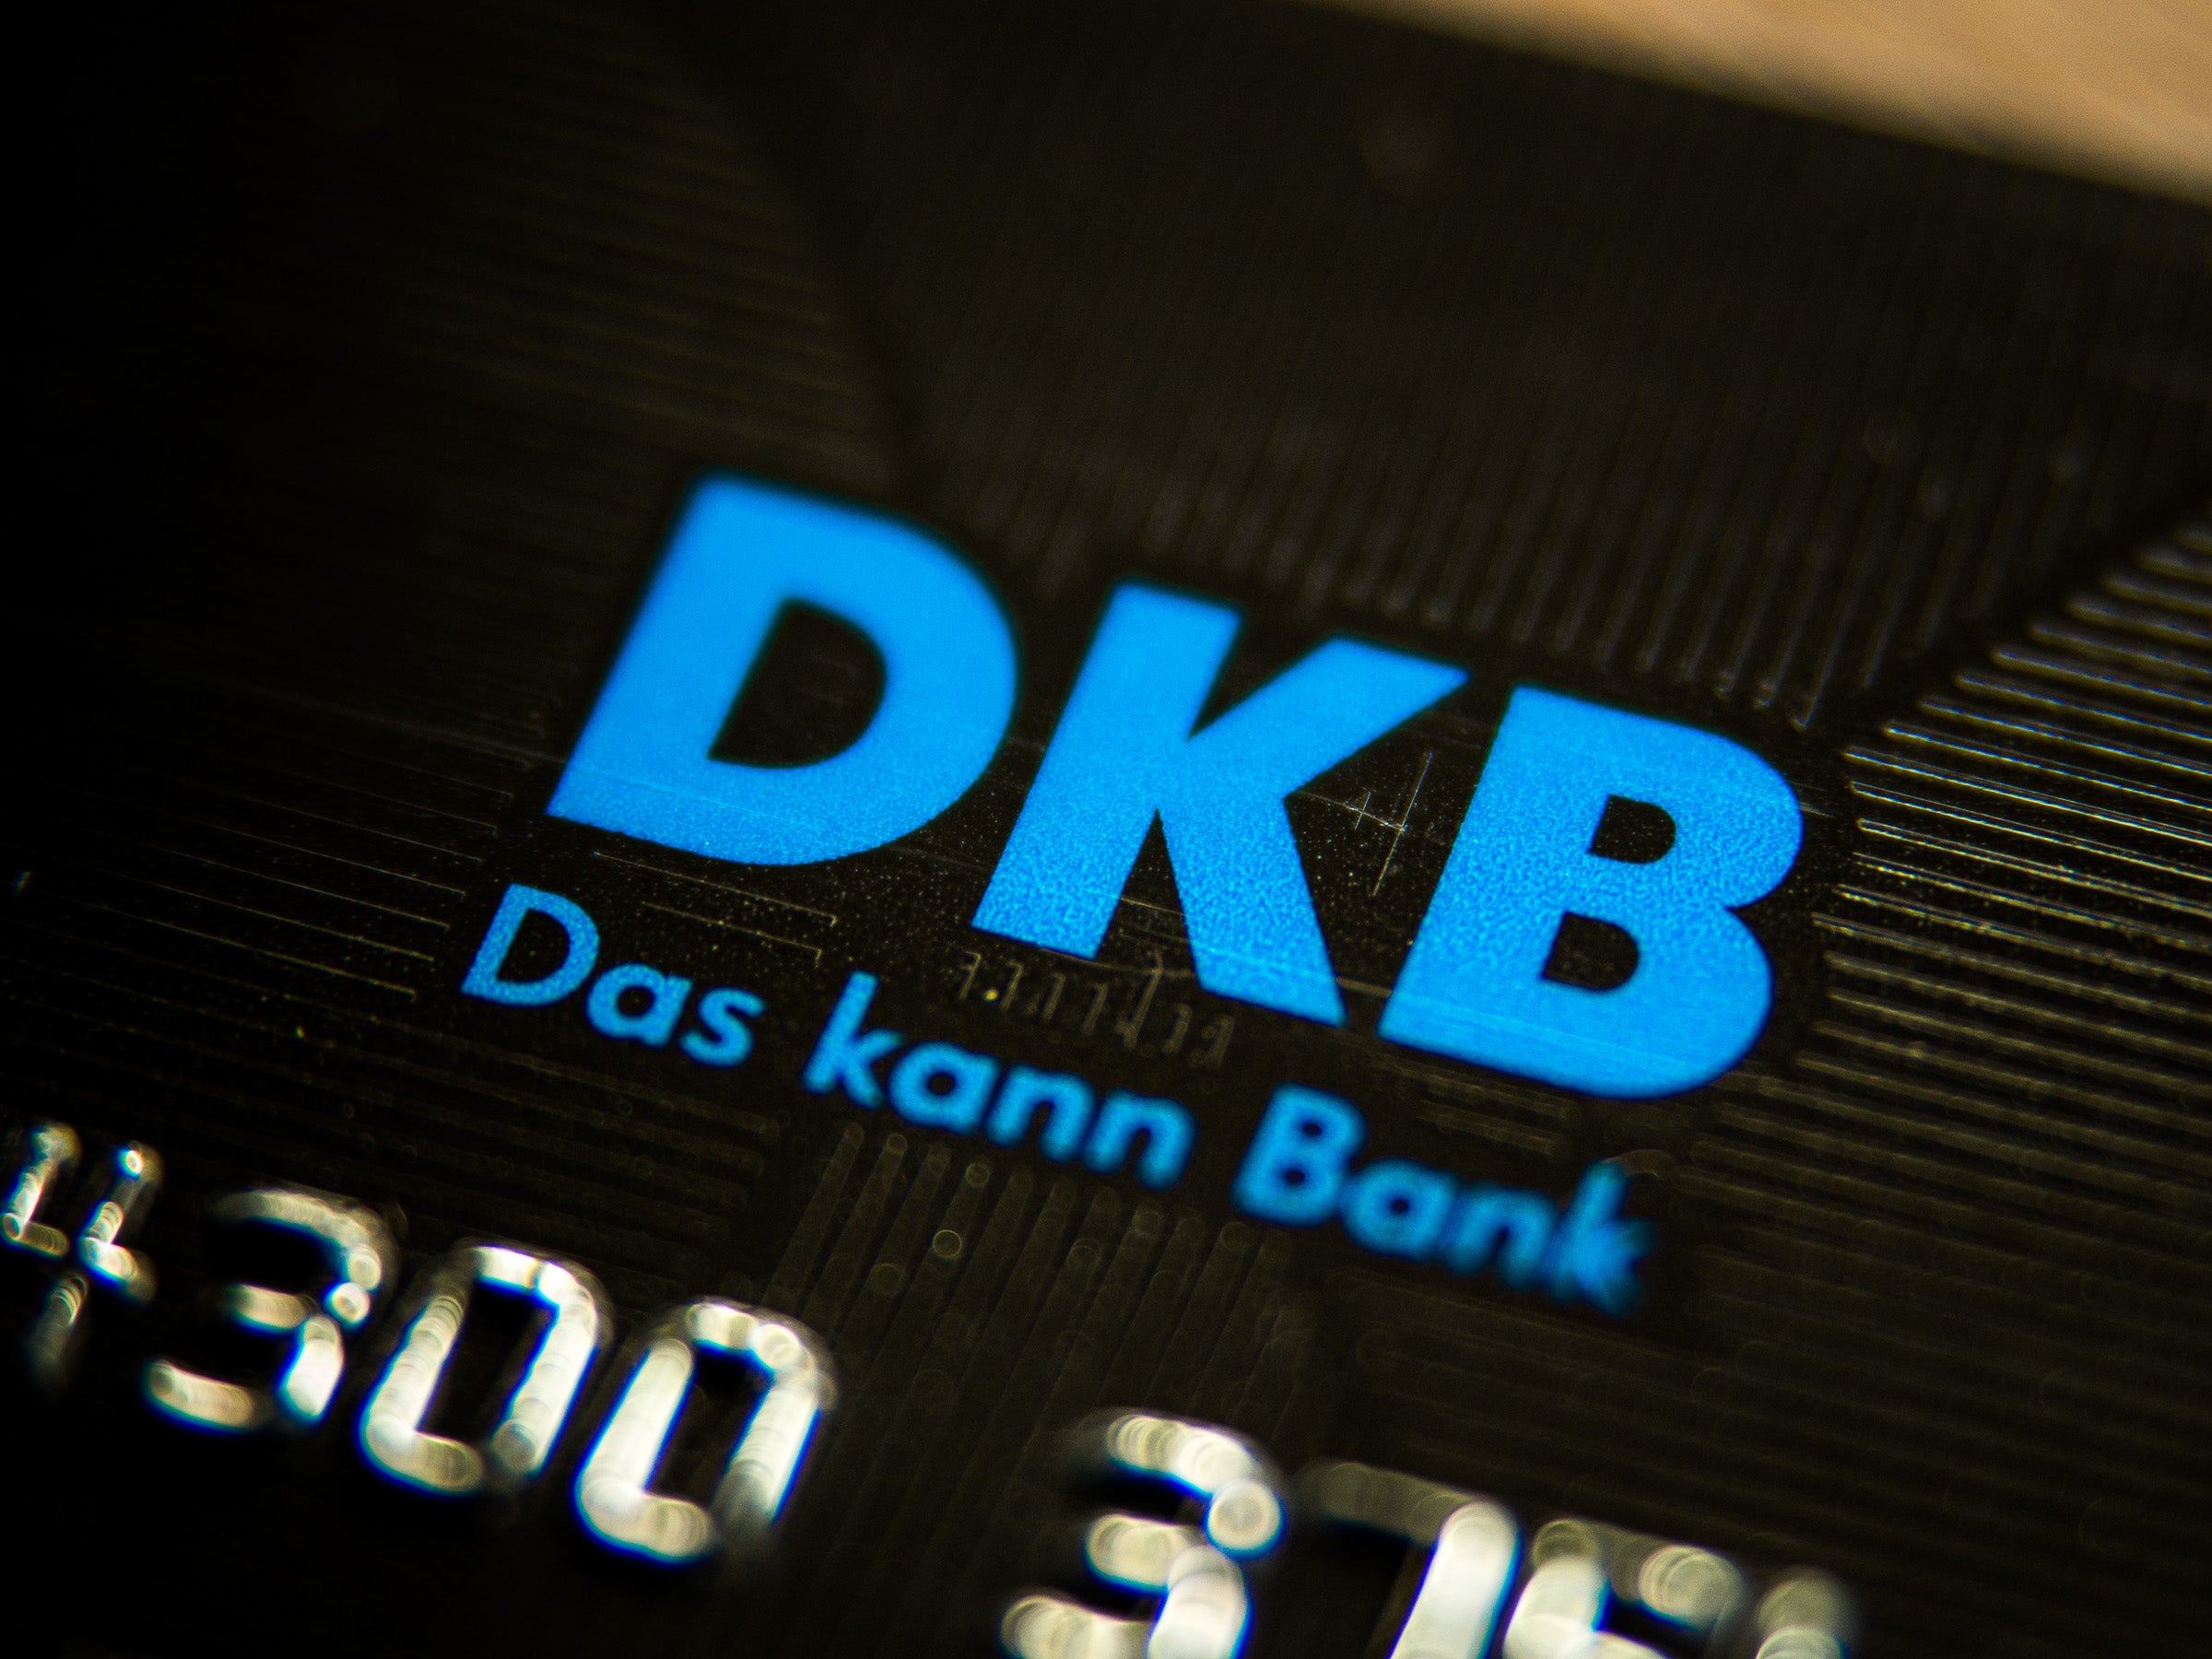 #DKB führt neue Gebühr ein: Jetzt müssen alle Kunden zahlen